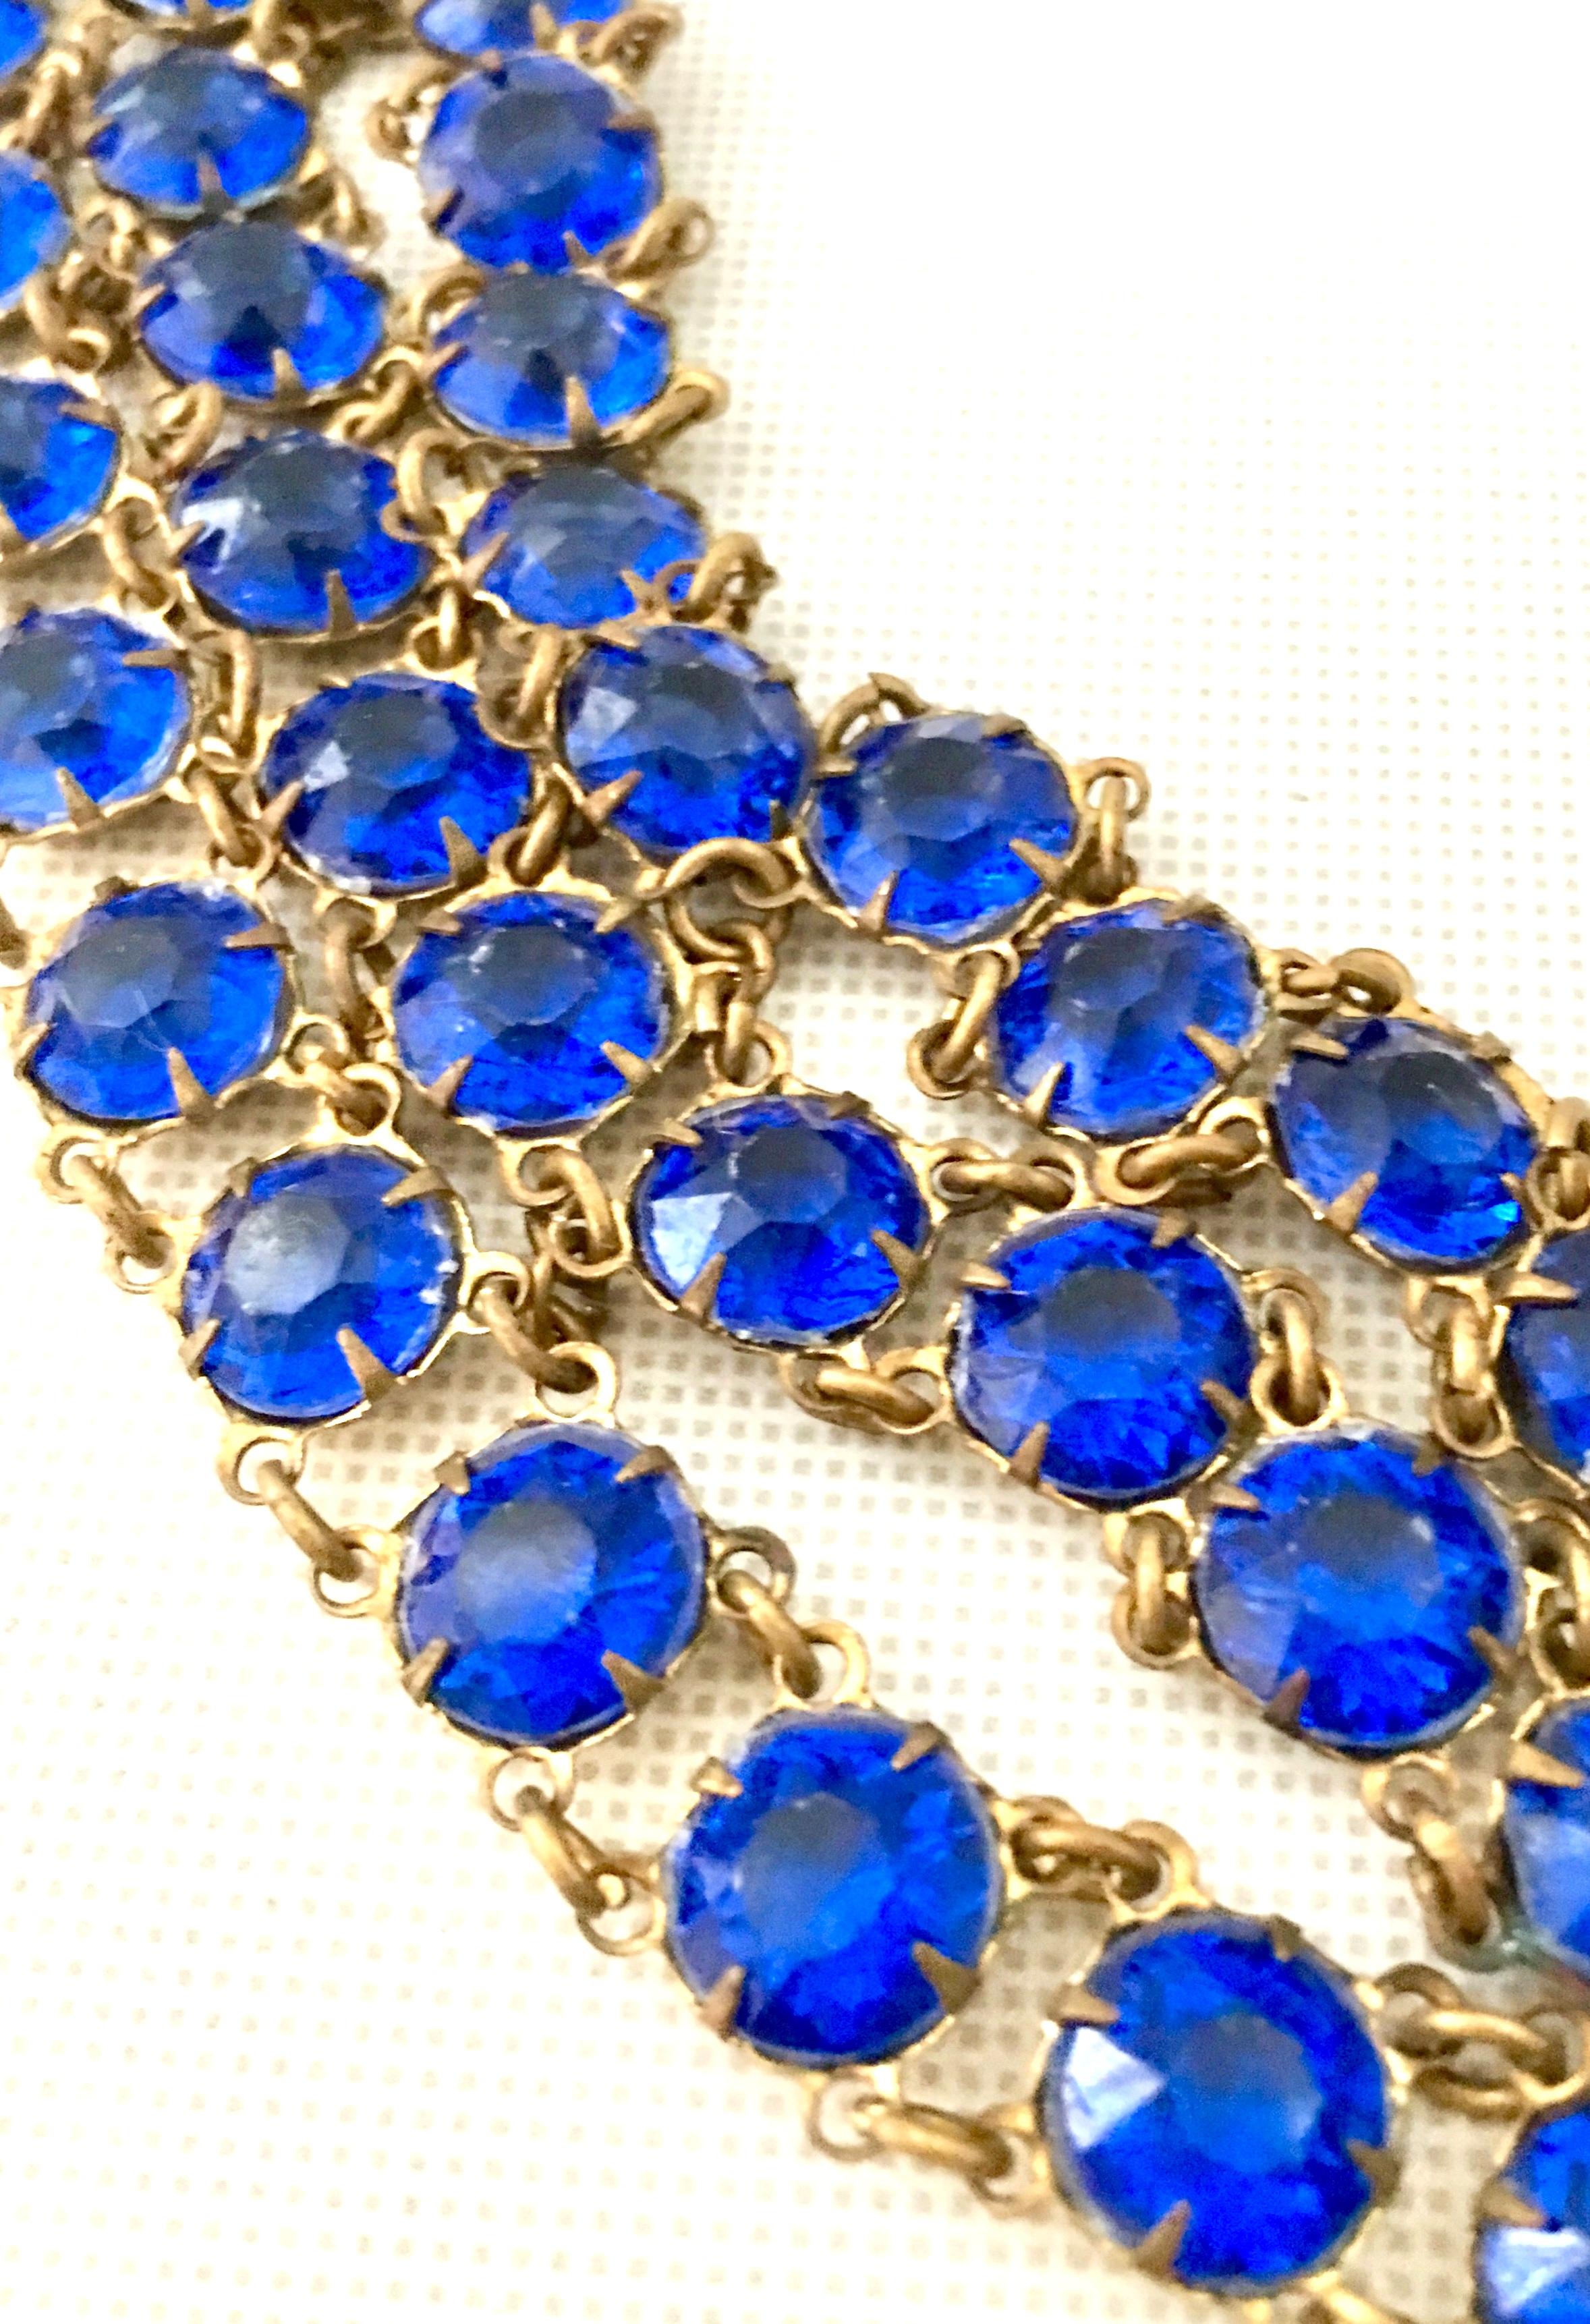 Antique Gilt Gold Sapphire Blue Faceted Glass Choker Necklace & Bracelet S/2 For Sale 3